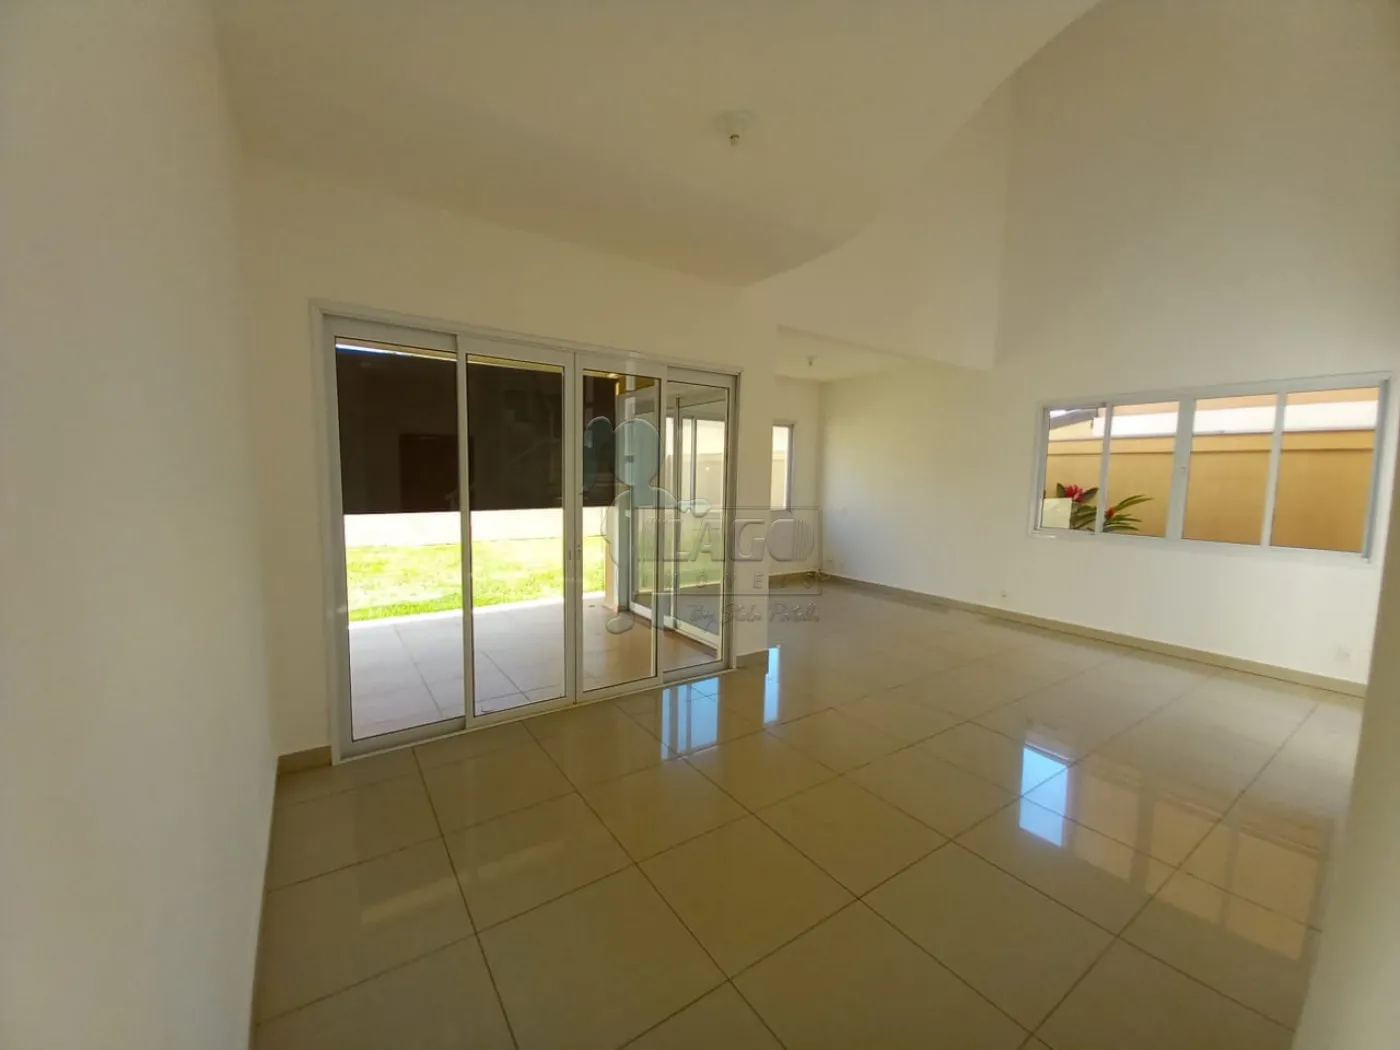 Alugar Casas / Condomínio em Ribeirão Preto R$ 4.700,00 - Foto 2